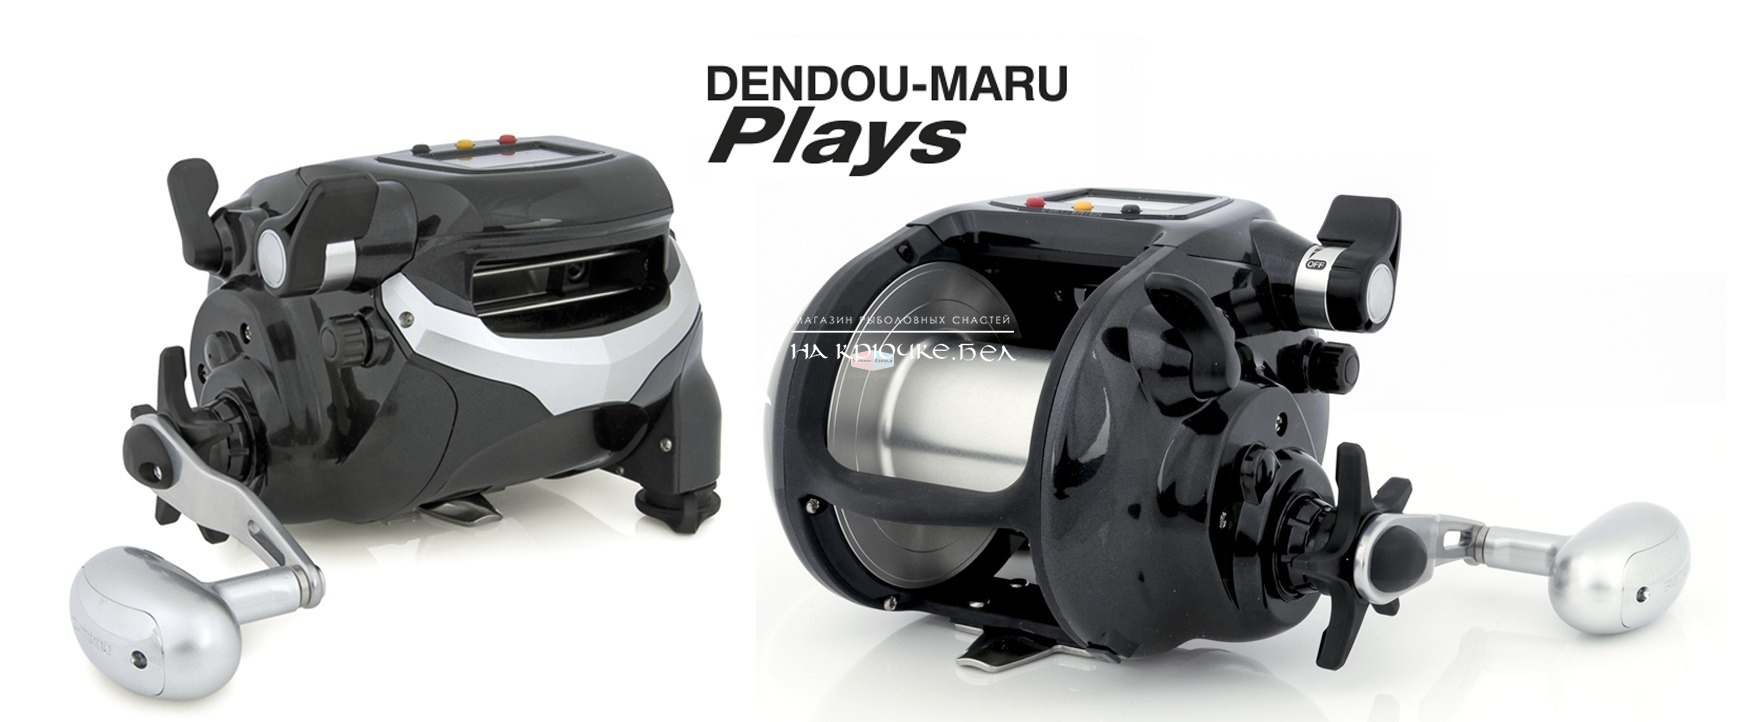 Мультипликаторная катушка Shimano Dendou-Maru 4000Plays ⏩ Профессиональные консультации. ✈️ Оперативная доставка в любой регион. ☎️ +375 29 662 27 73